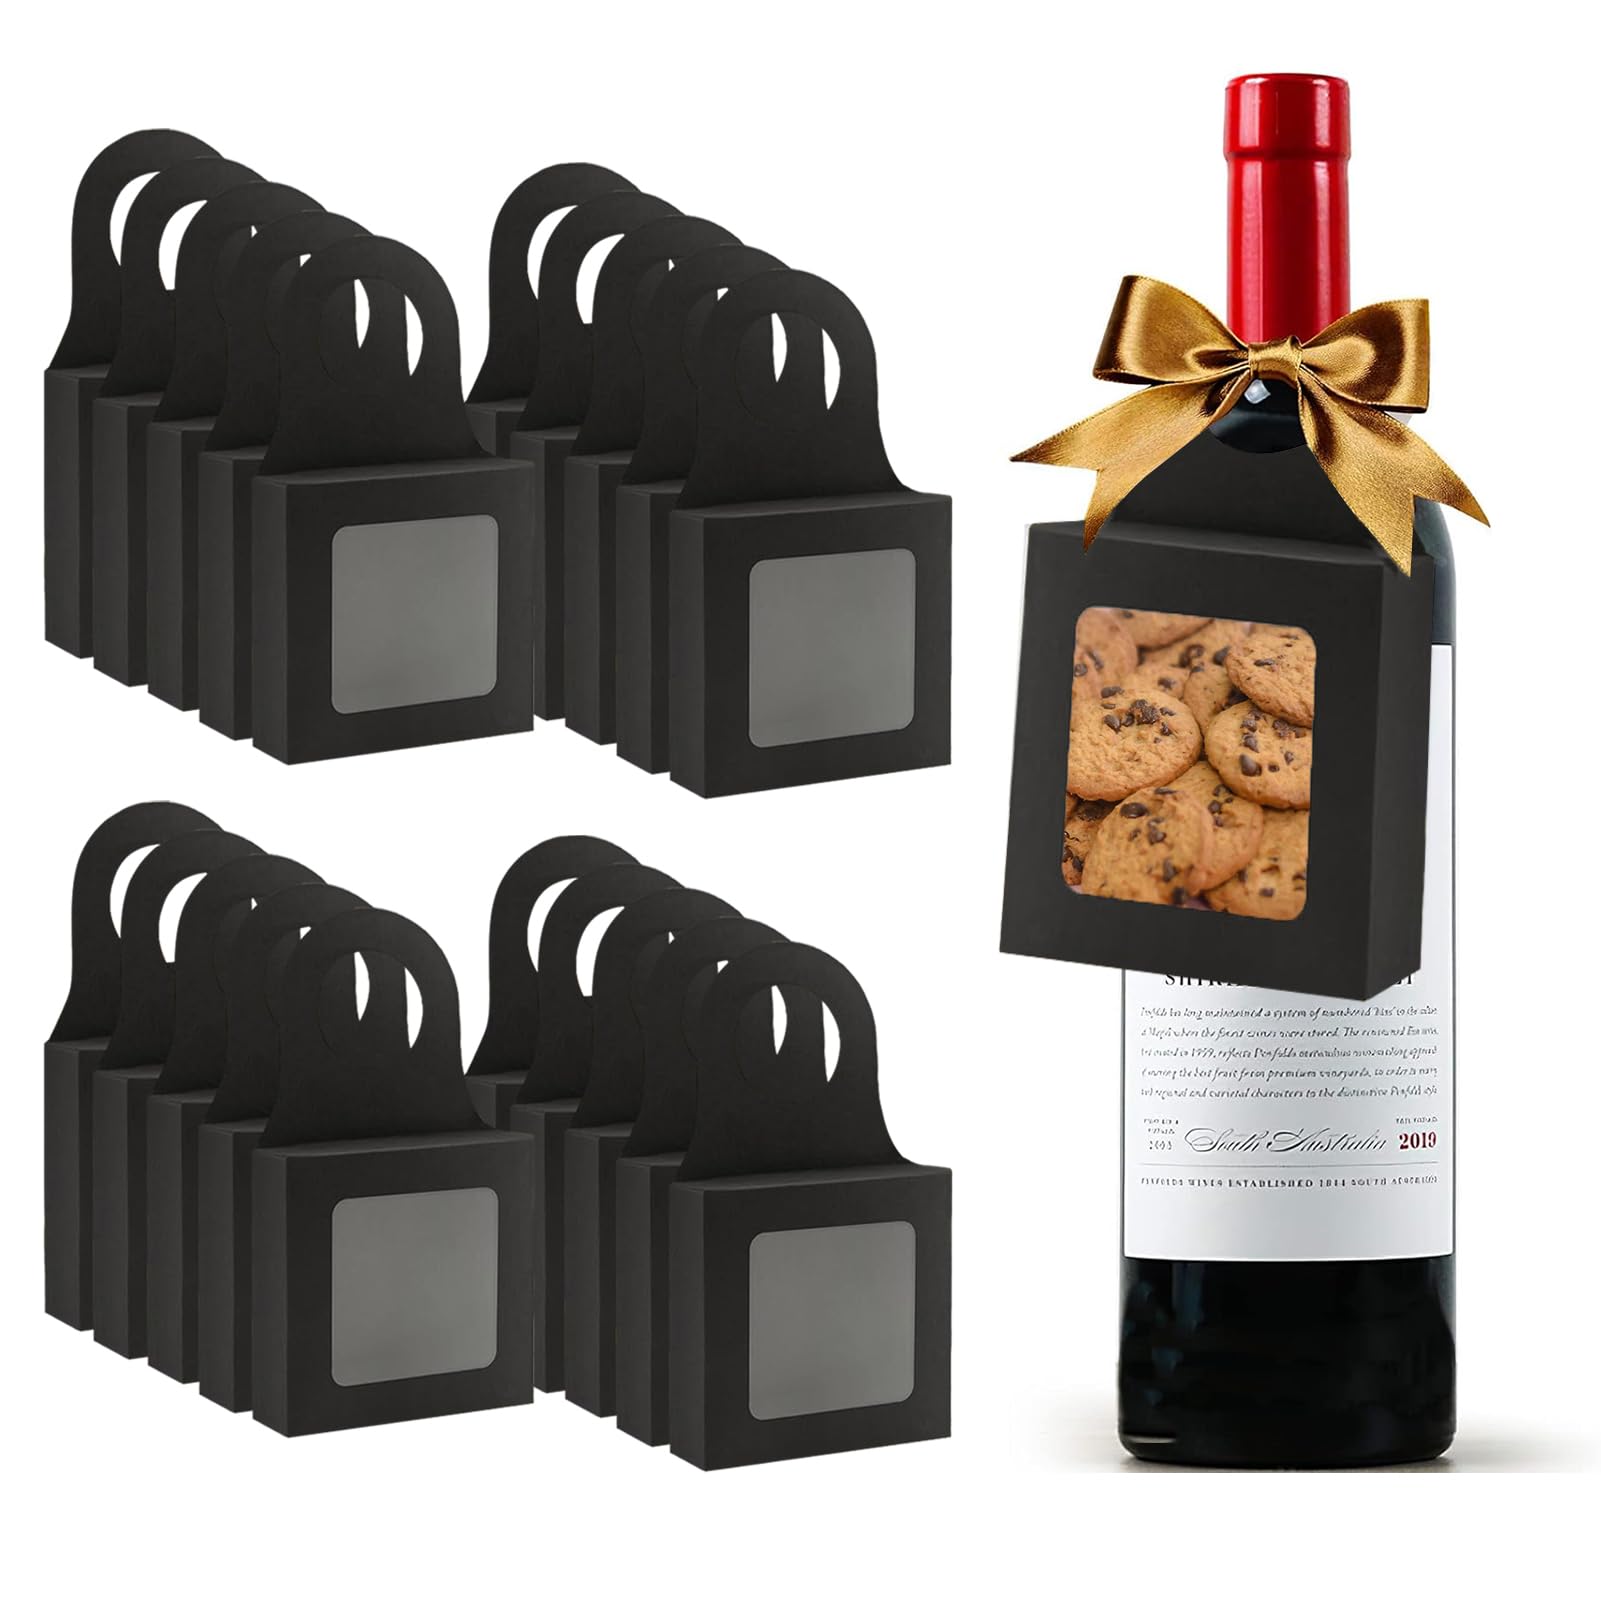 GHAMYEE Wine Bottle Gift Box with Window